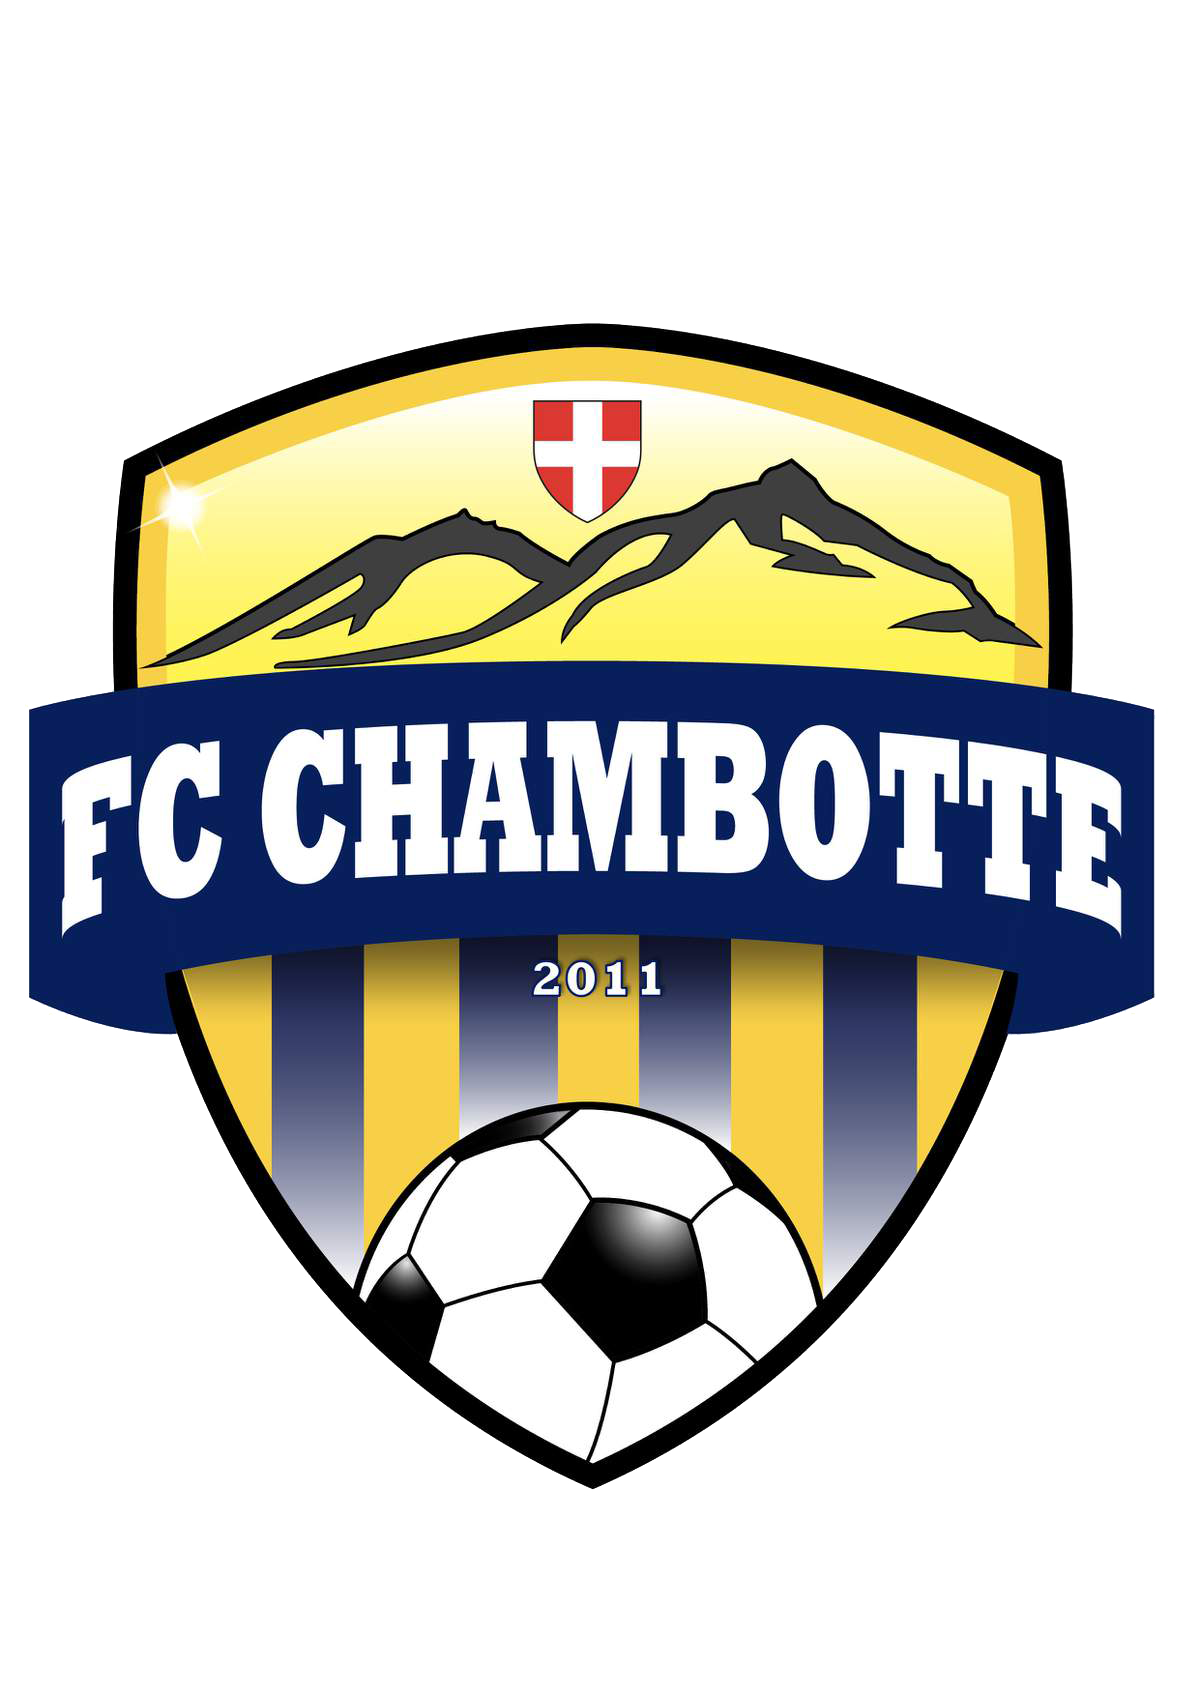 Boutique du FC Chambotte | TeamSport2000
			